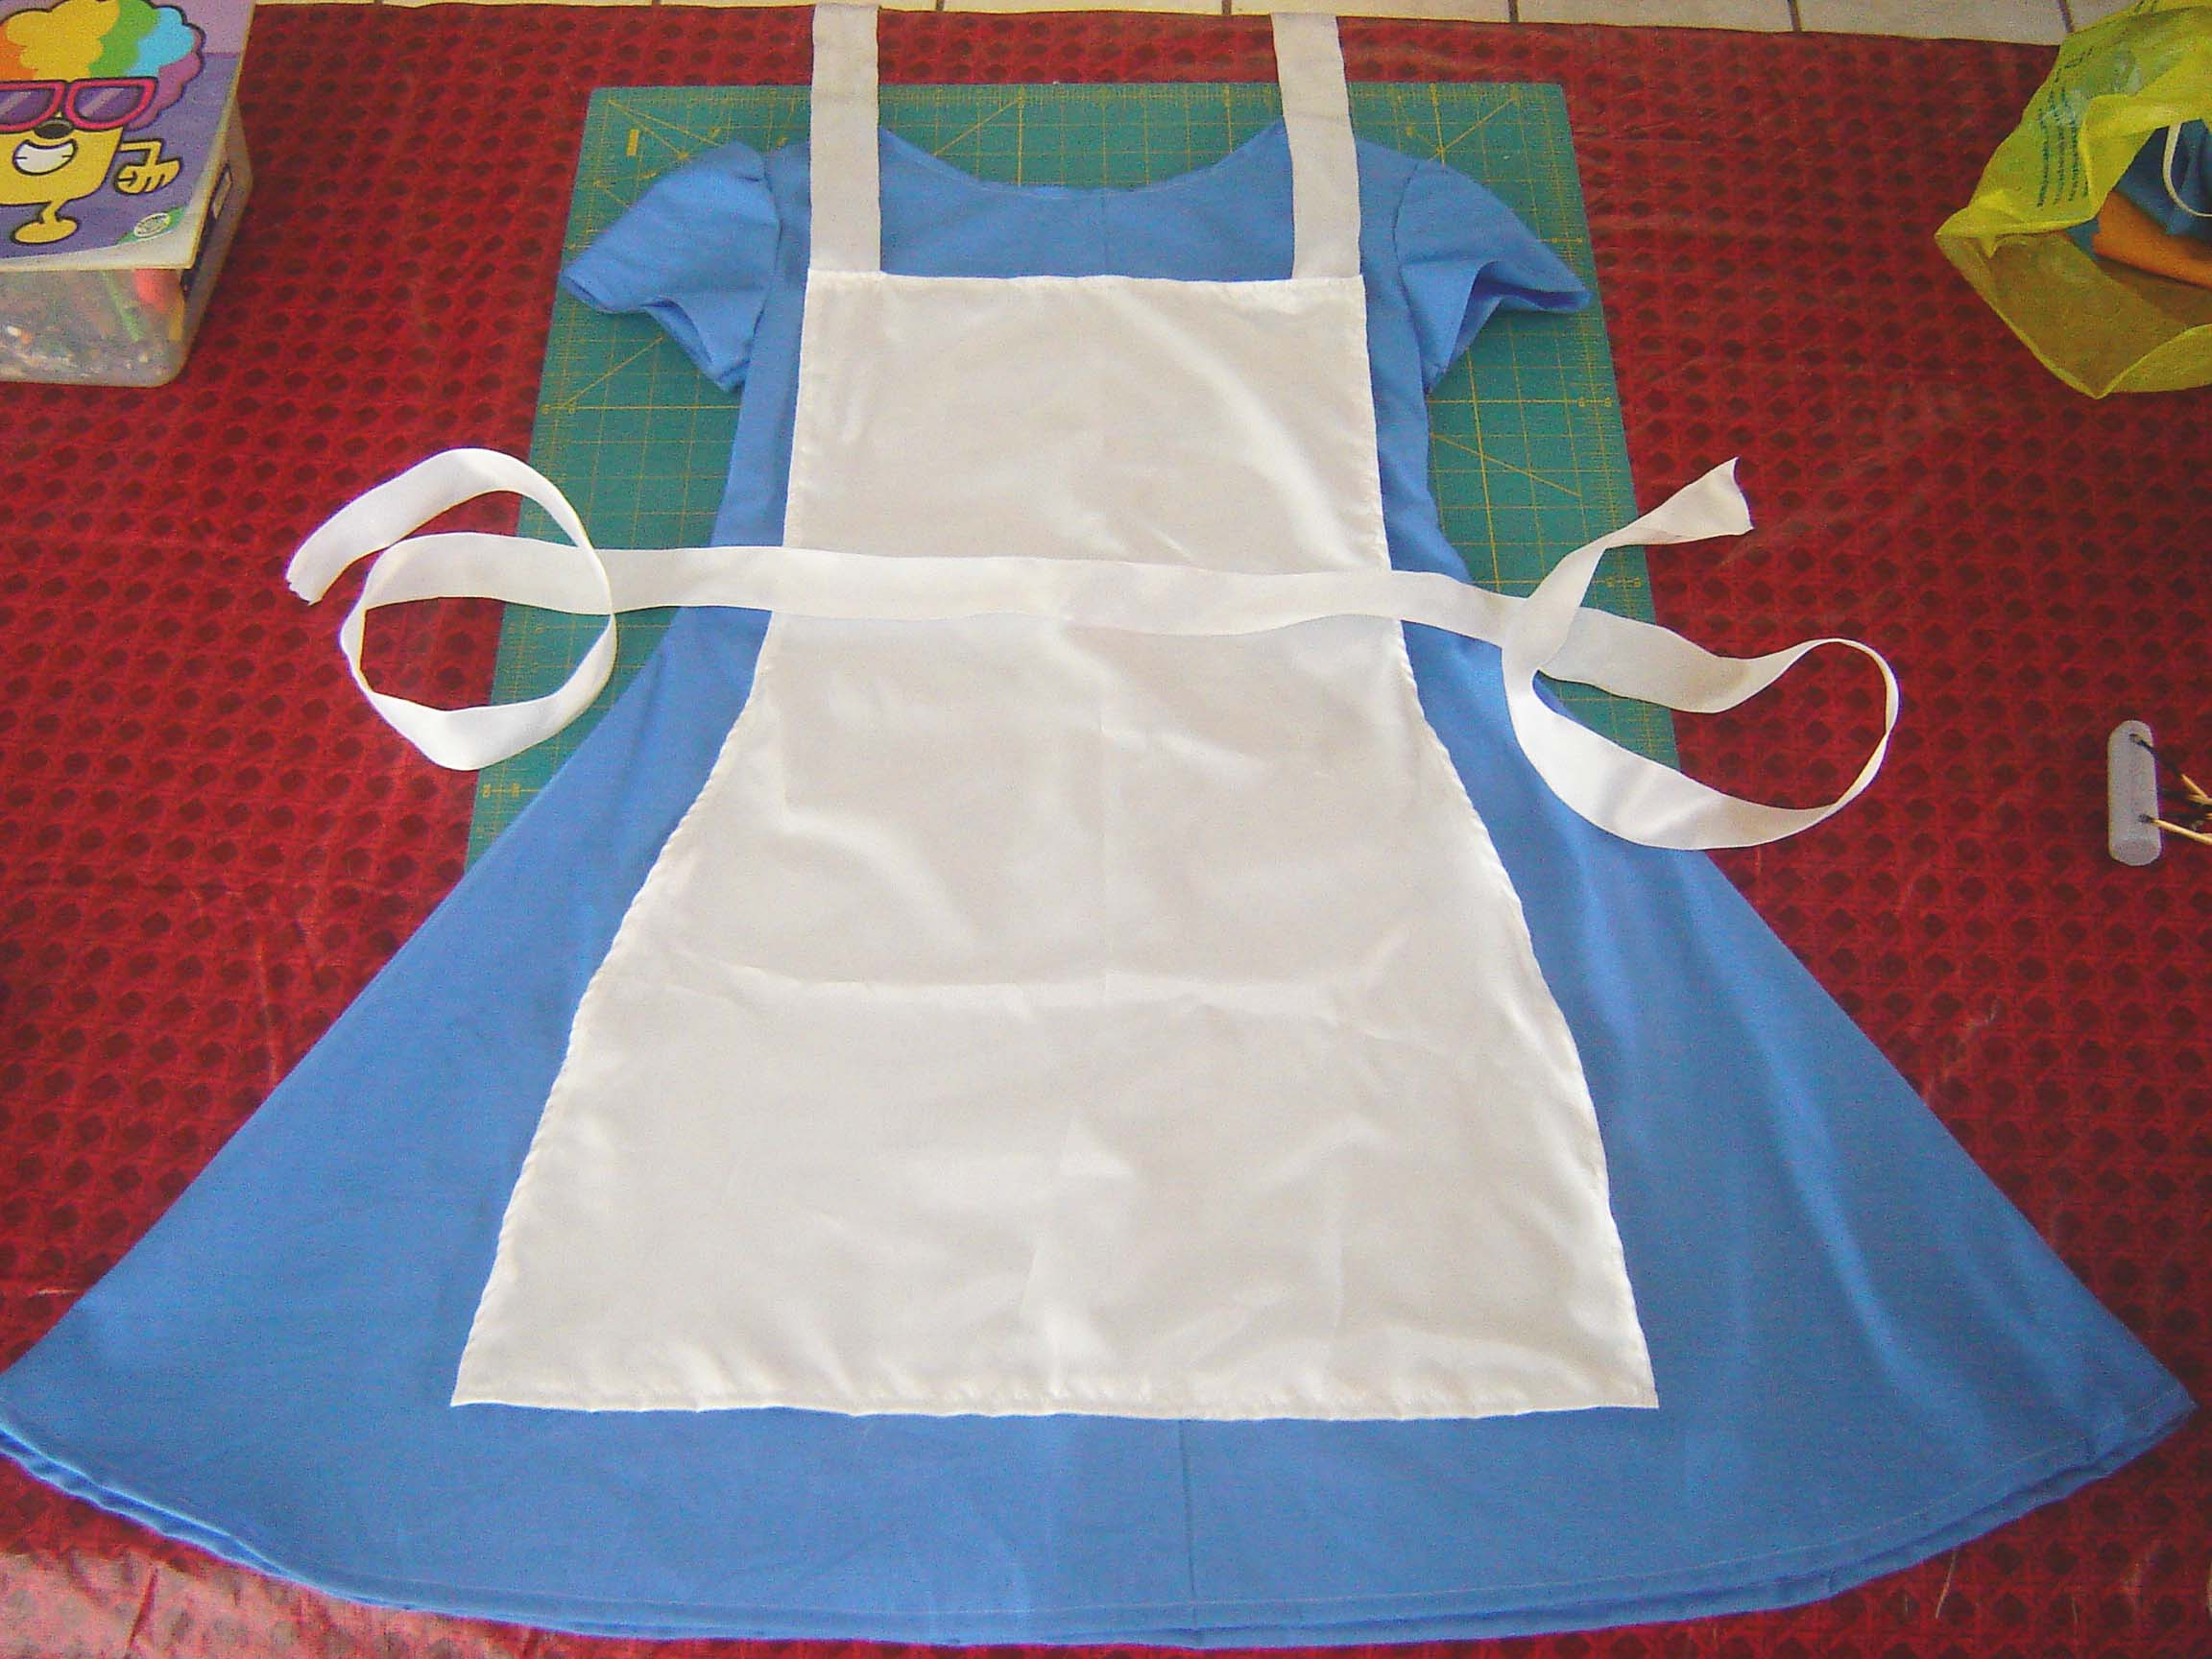 Best ideas about DIY Alice In Wonderland Costume
. Save or Pin Last Minute Alice in Wonderland Costume Now.